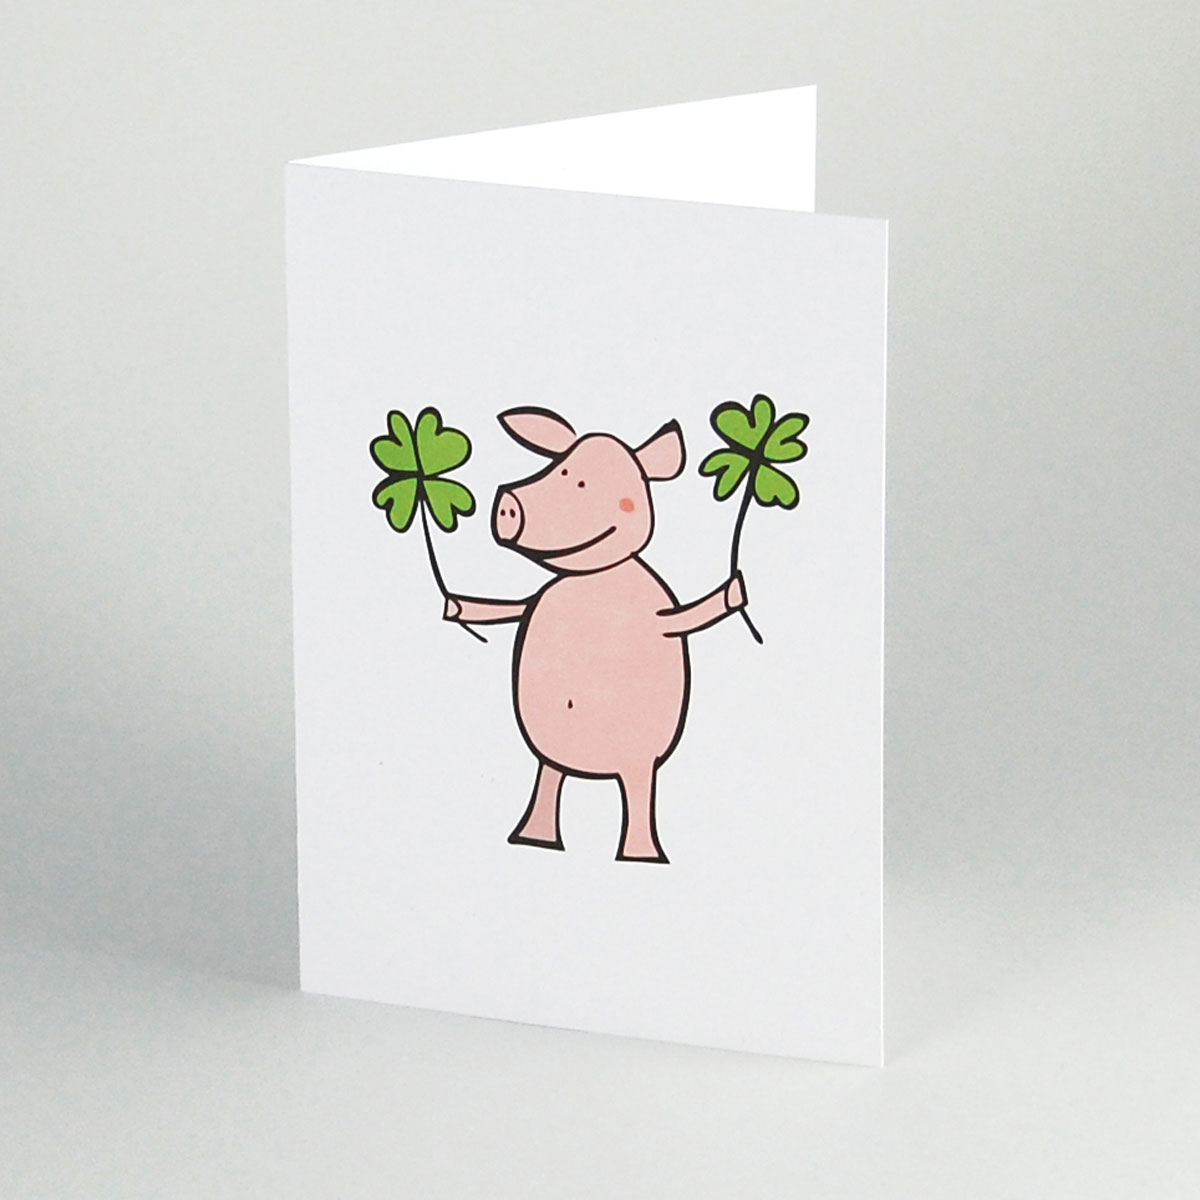 witzige Recycling-Glückwunschkarten: Schwein und Glücksklee